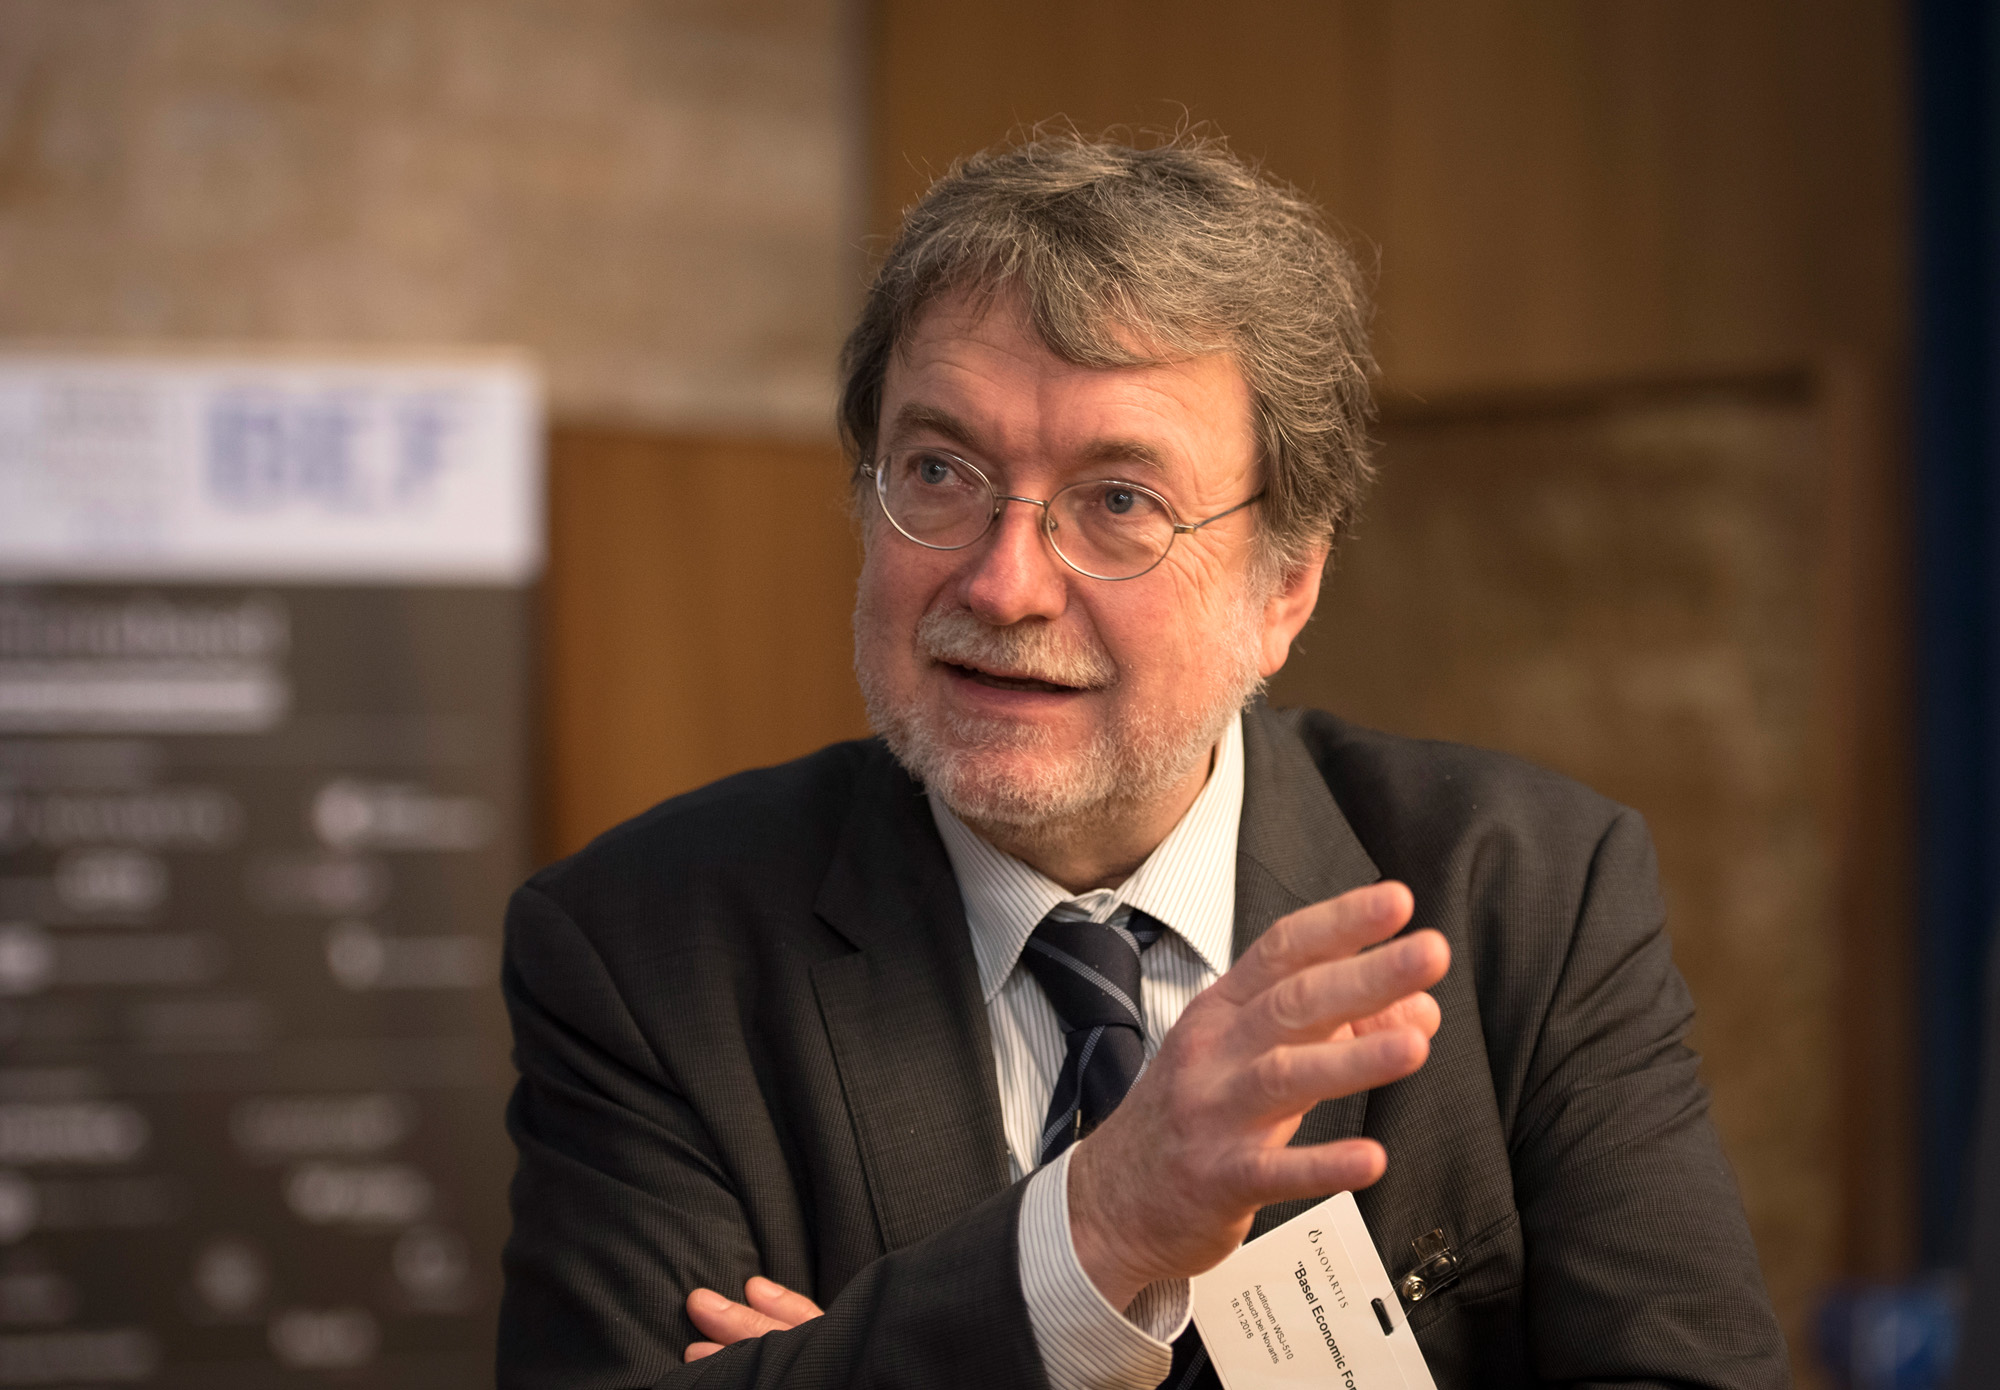 «Die Alterung ist nicht aufhaltbar, aber der gesellschaftliche Wandel ist gestaltbar» – Joachim Möller, Direktor des Instituts für Arbeitsmarkt- und Berufsforschung (IAB) der Bundesagentur für Arbeit in Nürnberg (D).